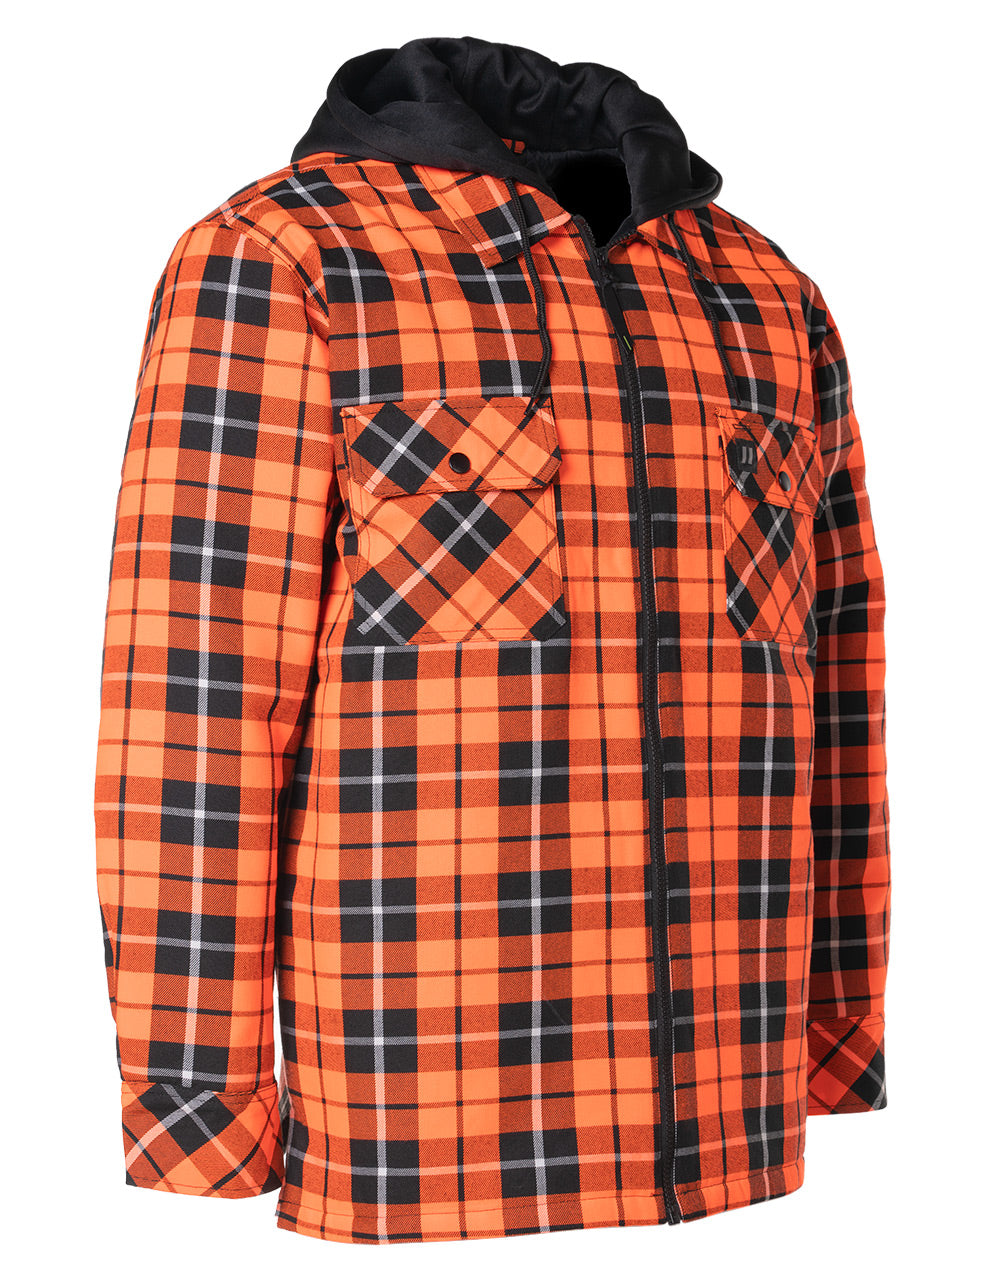 Veste-chemise en flanelle à capuche et à carreaux tartan orange haute visibilité, doublée de couette et zippée sur le devant 